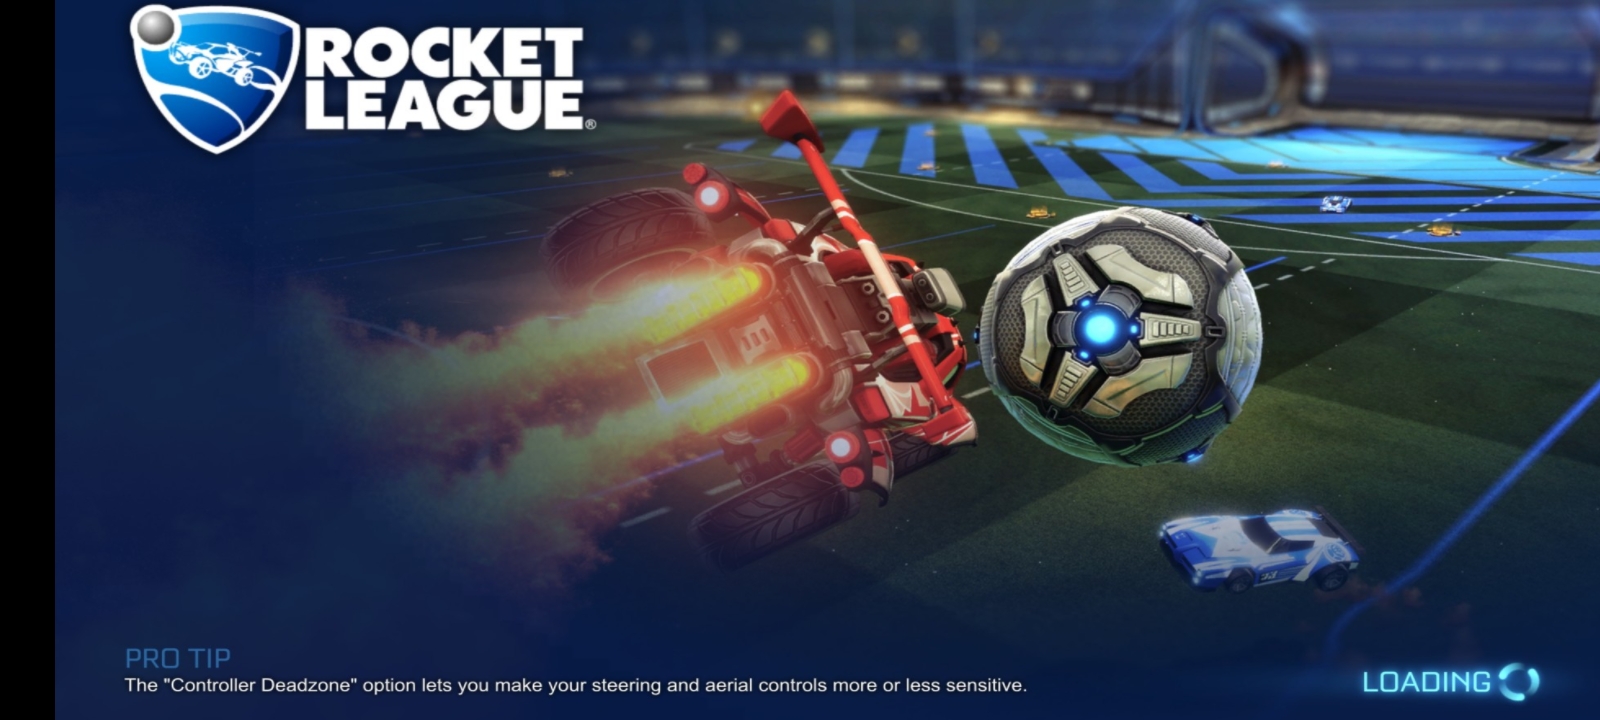 rocket league 2d online